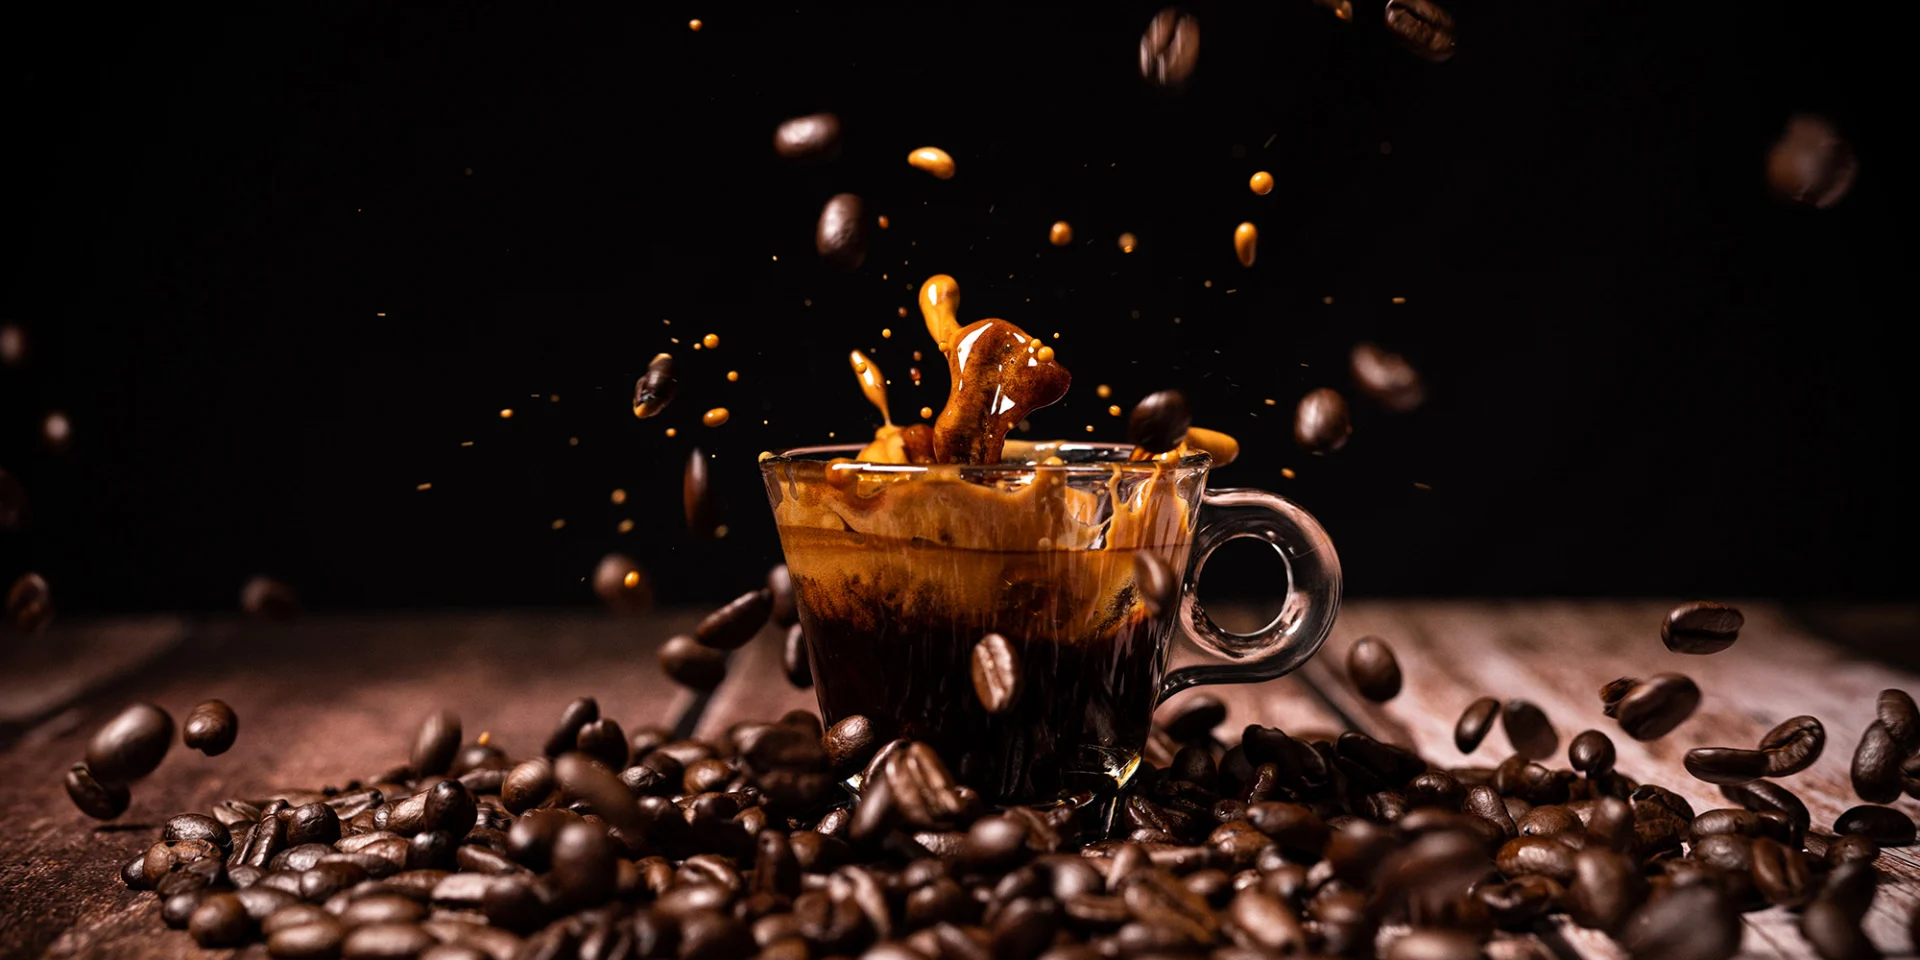 Une tasse d'espresso est posée sur un fond sombre, sur des grains de café.